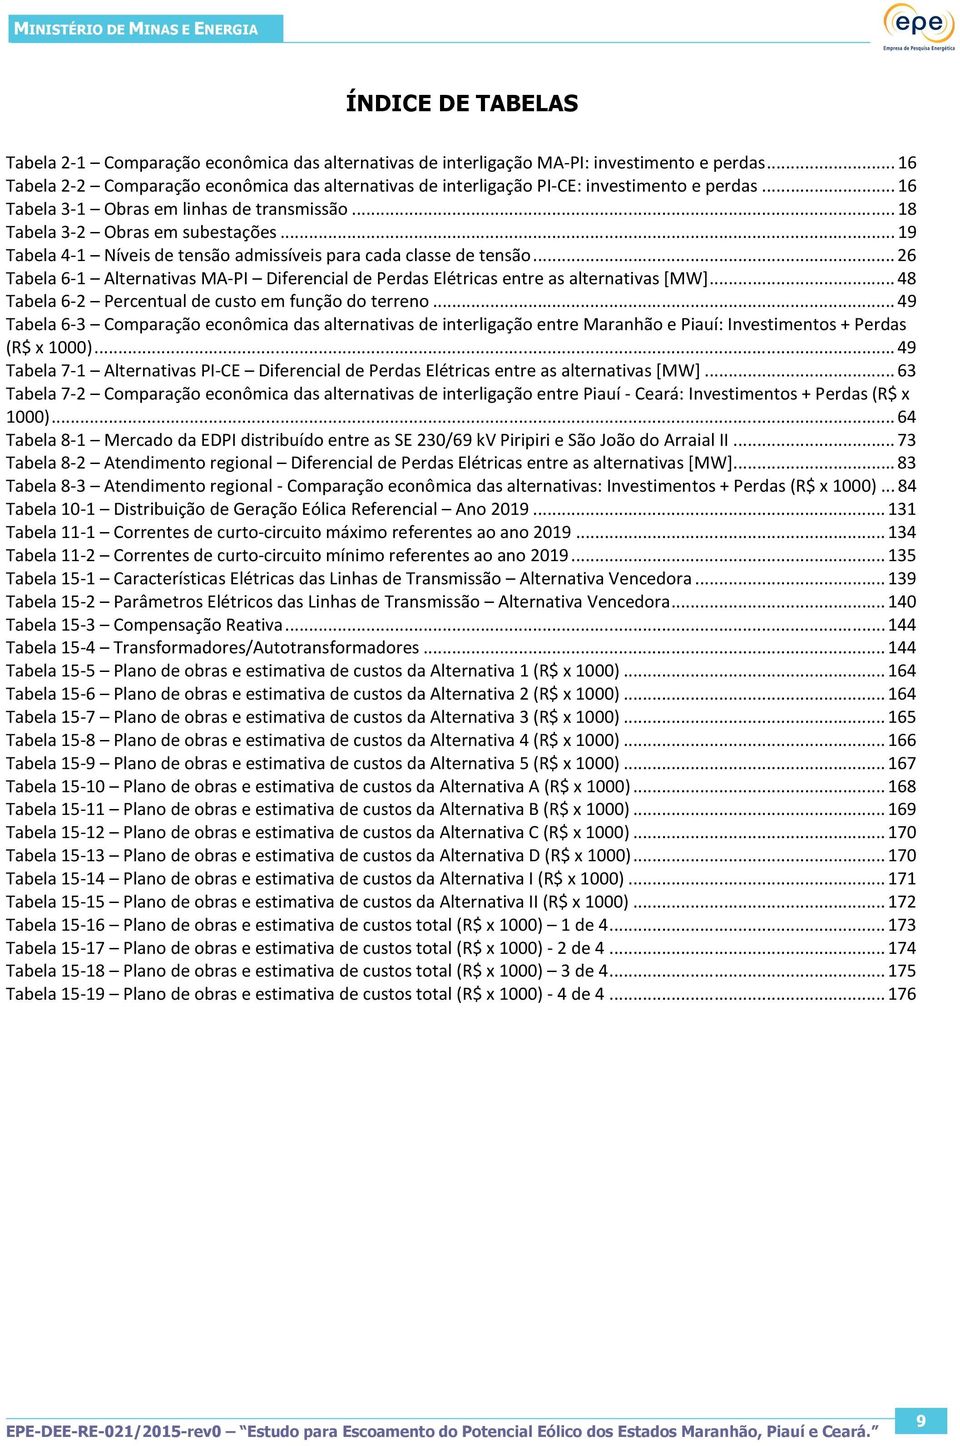 .. 19 Tabela 4-1 Níveis de tensão admissíveis para cada classe de tensão... 26 Tabela 6-1 Alternativas MA-PI Diferencial de Perdas Elétricas entre as alternativas [MW].